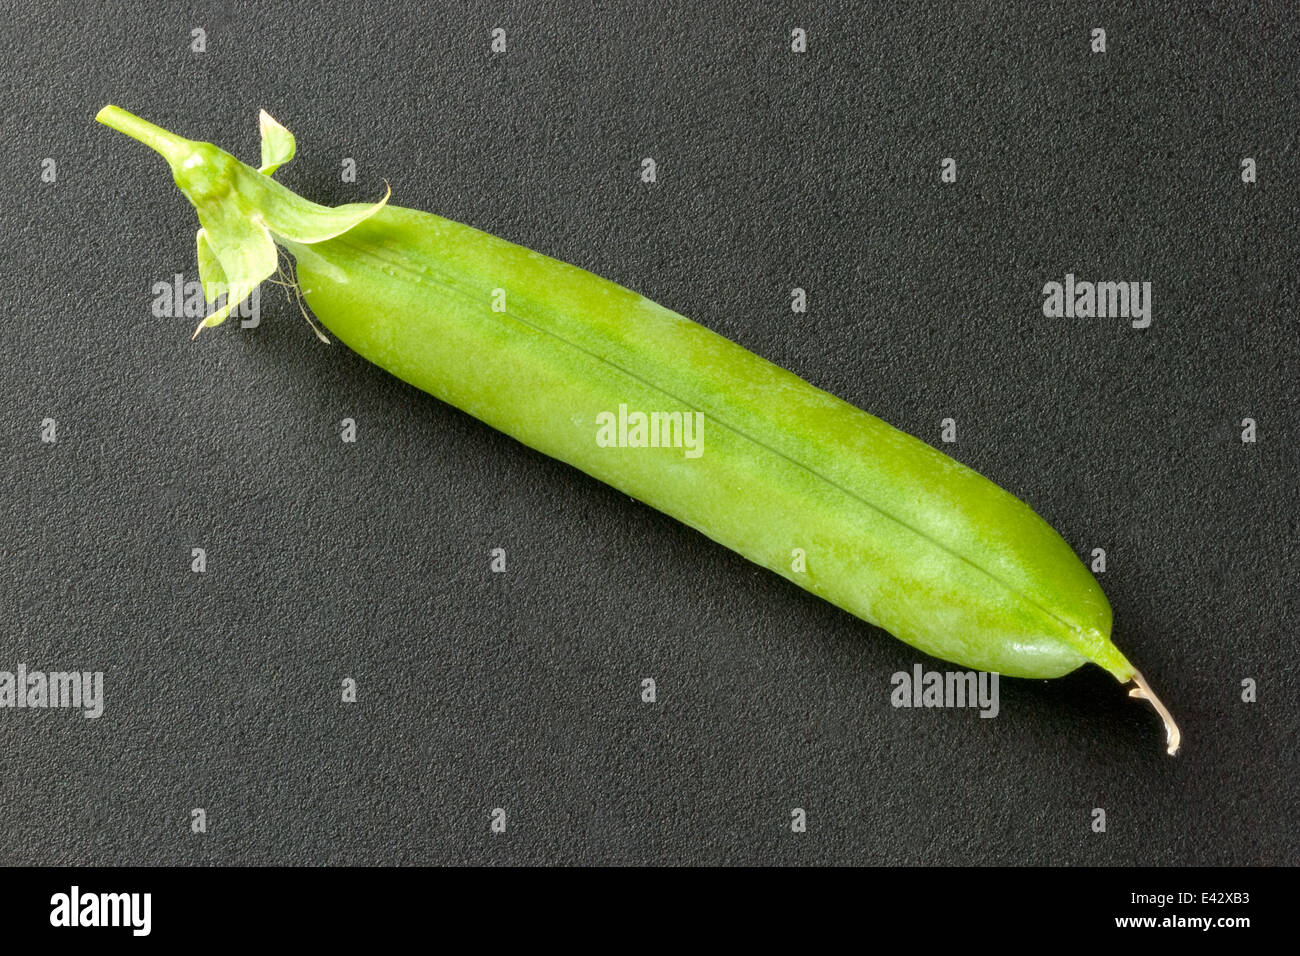 Close-up of a closed fresh pea pod. Stock Photo